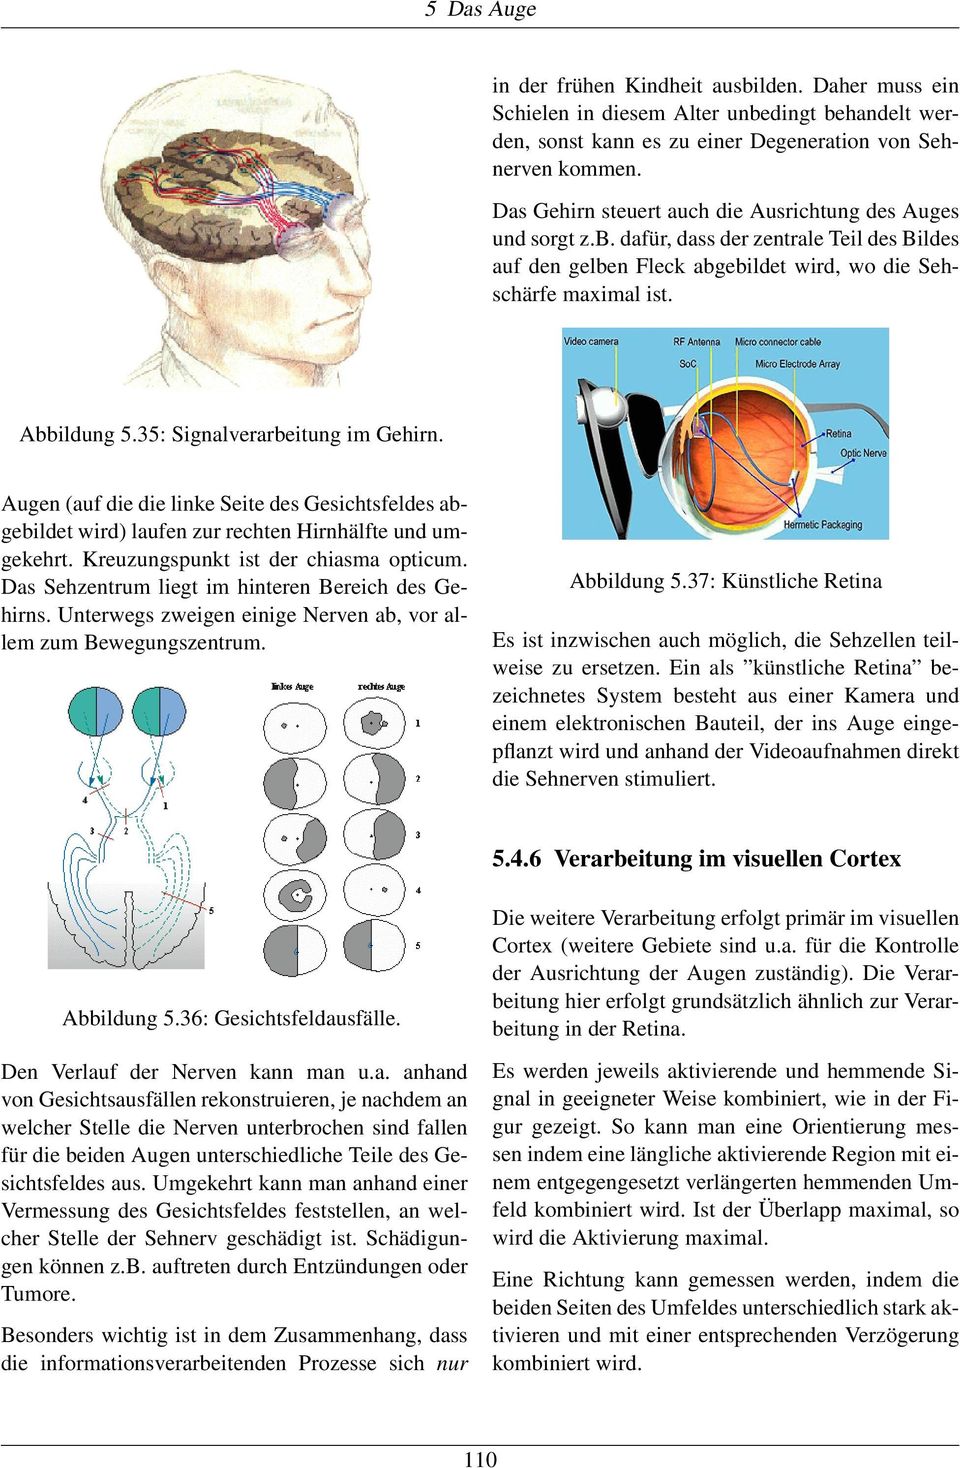 35: Signalverarbeitung im Gehirn. Augen (auf die die linke Seite des Gesichtsfeldes abgebildet wird) laufen zur rechten Hirnhälfte und umgekehrt. Kreuzungspunkt ist der chiasma opticum.